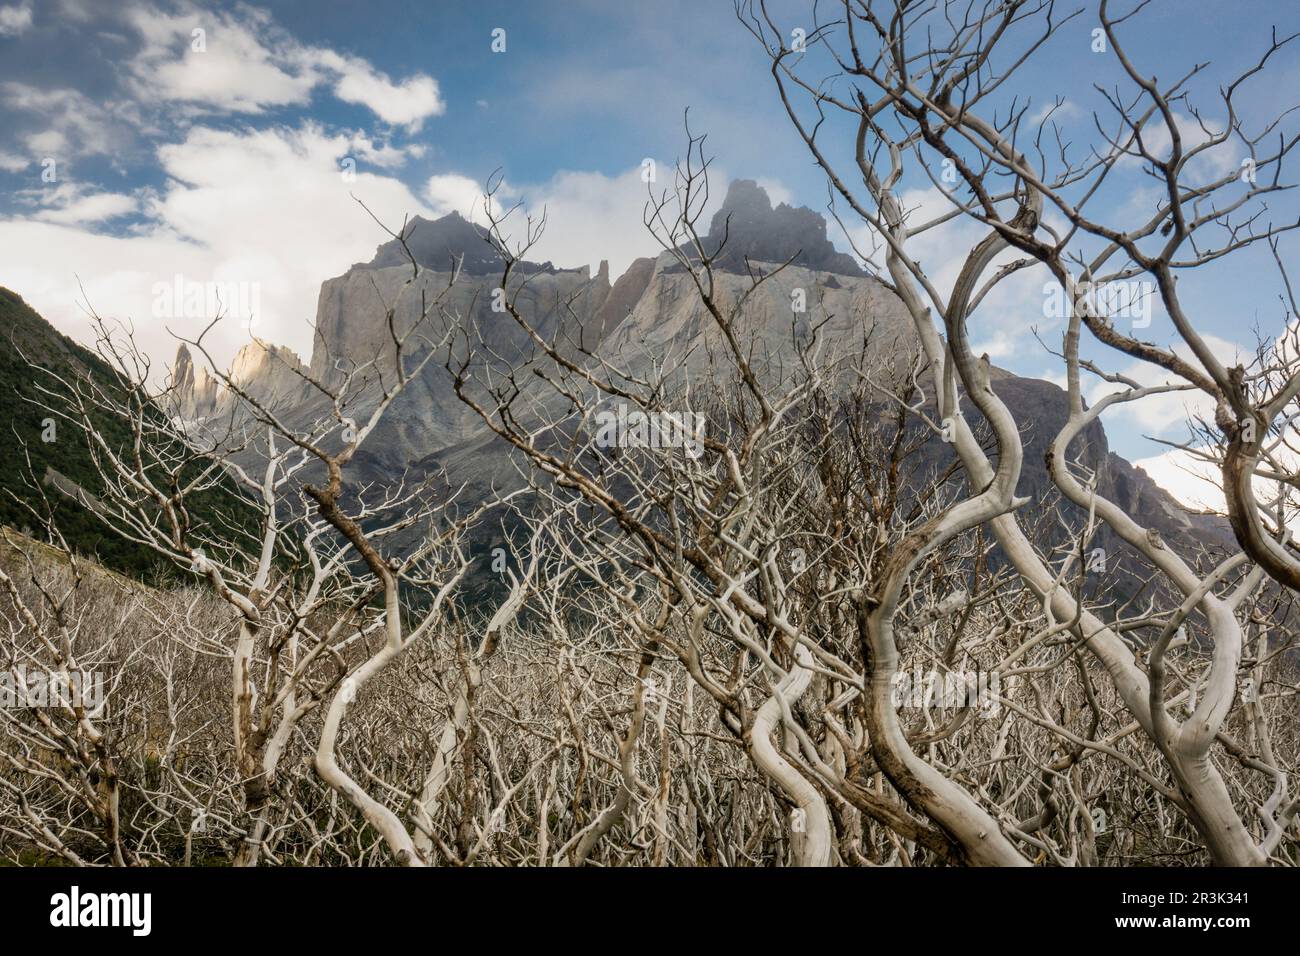 zona incendiada, trekking W, Parque nacional Torres del Paine,Sistema Nacional de Áreas Silvestres Protegidas del Estado de Chile.Patagonia, República de Chile,América del Sur. Stock Photo